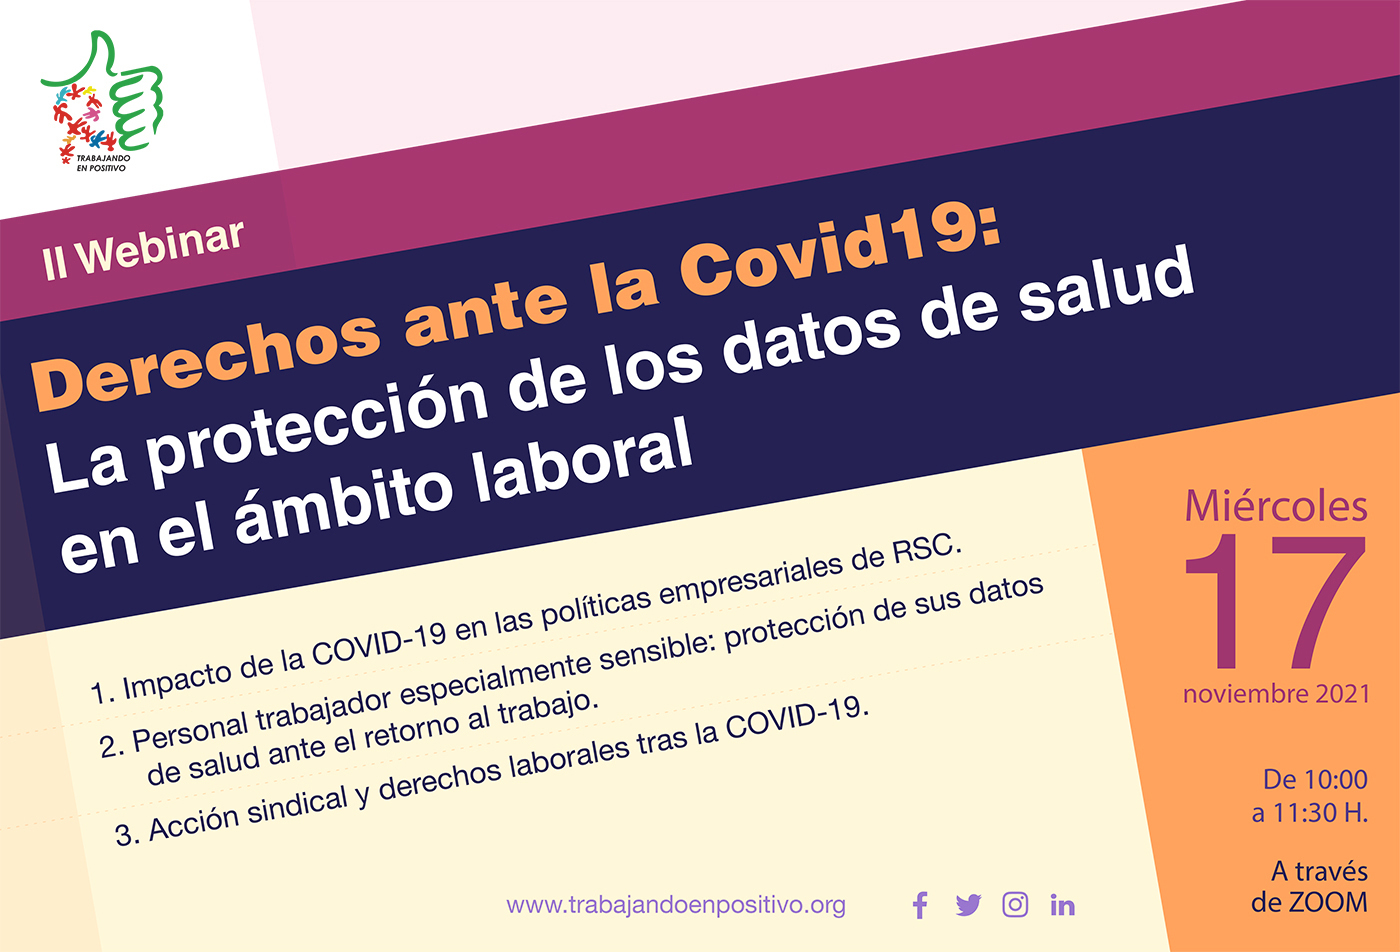 II Webinar “Derechos ante la COVID-19: La protección de los datos de salud en el ámbito laboral”